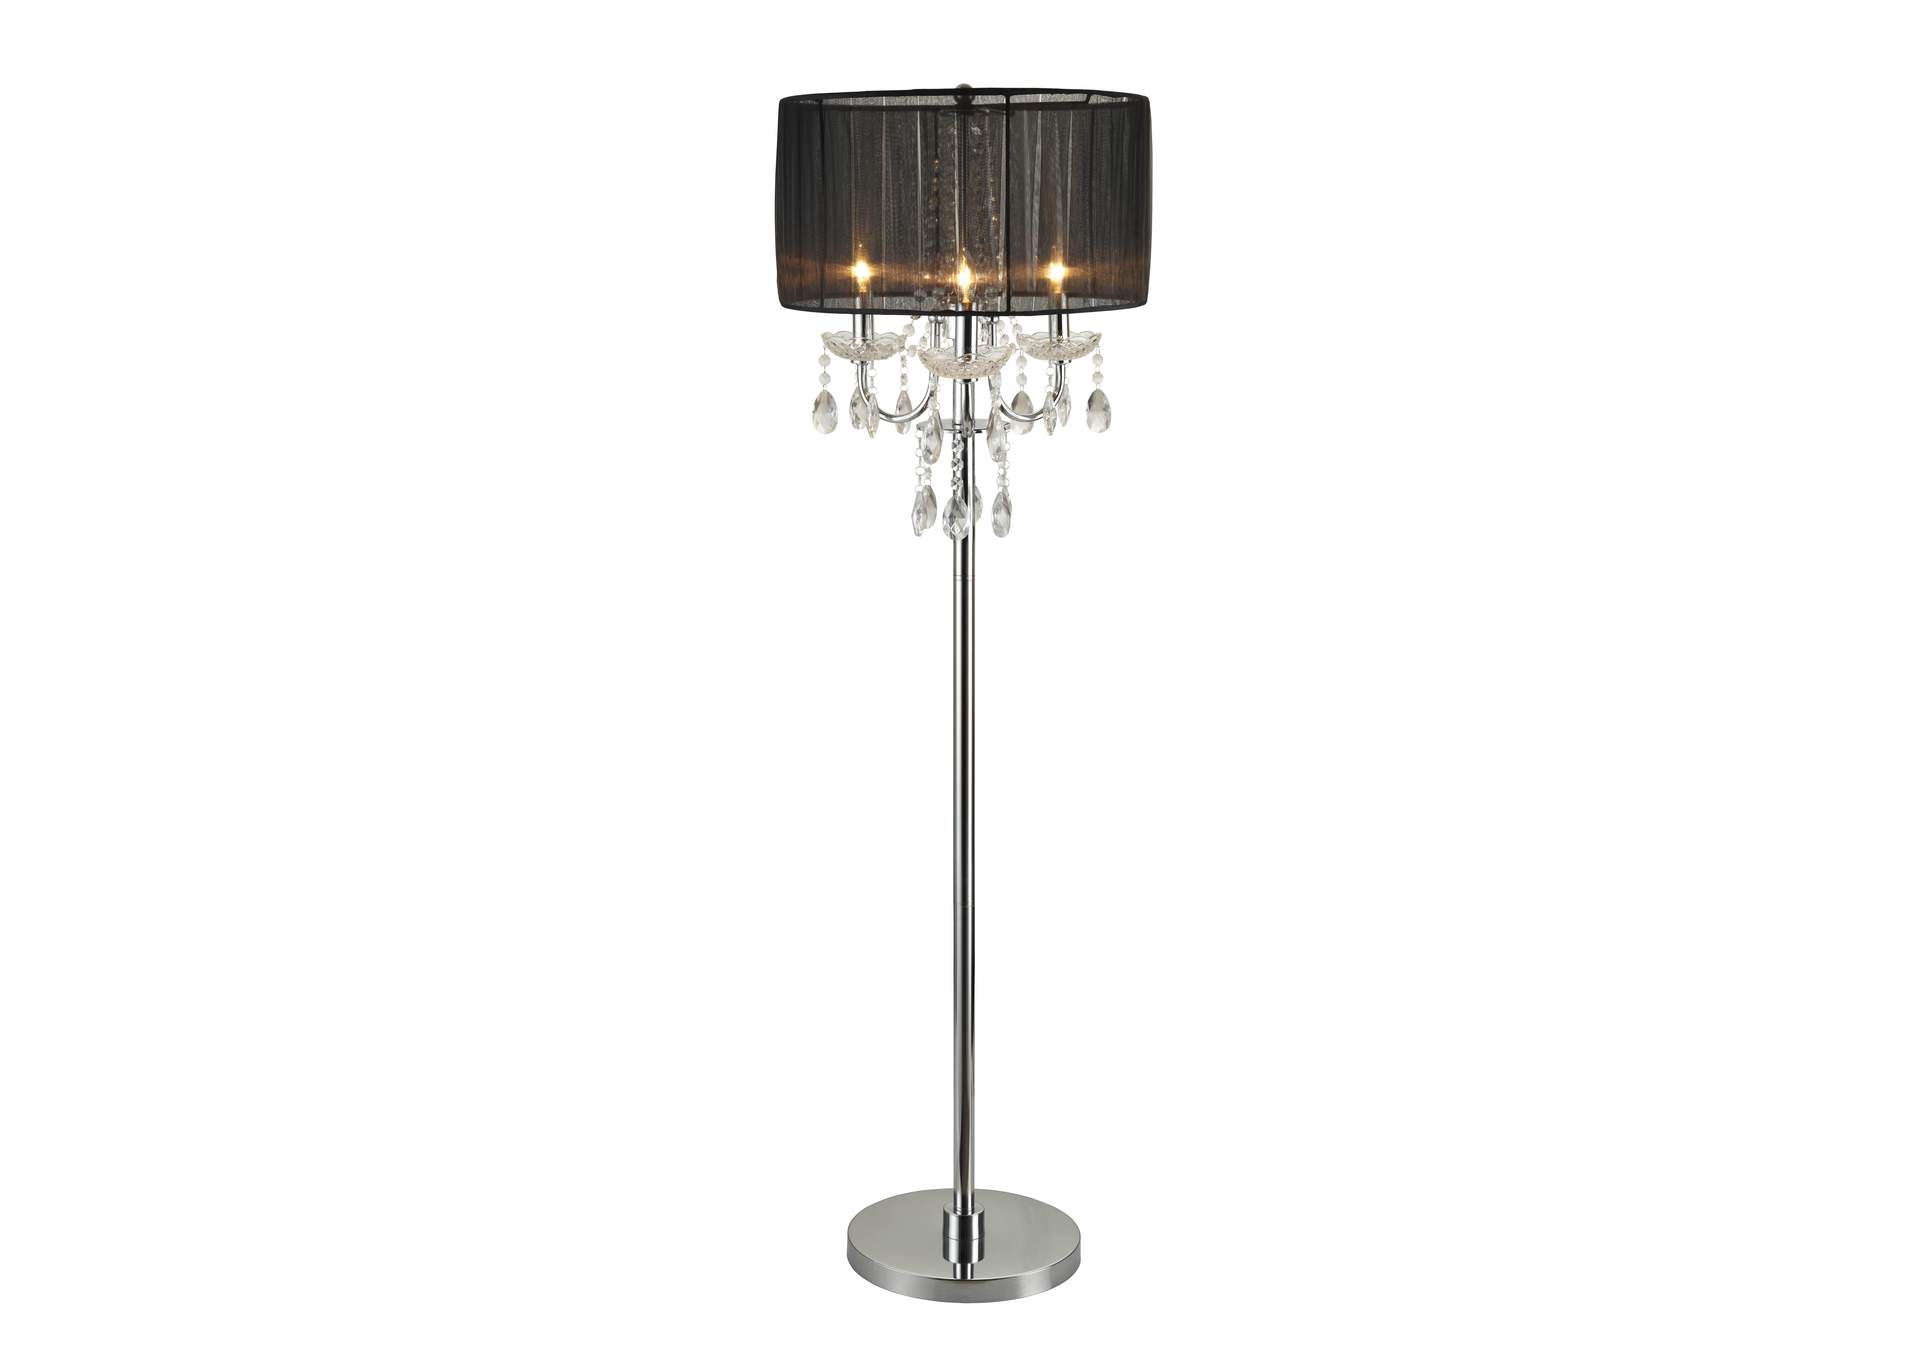 Chandelier Floor Lamp 62.5"H,Crown Mark